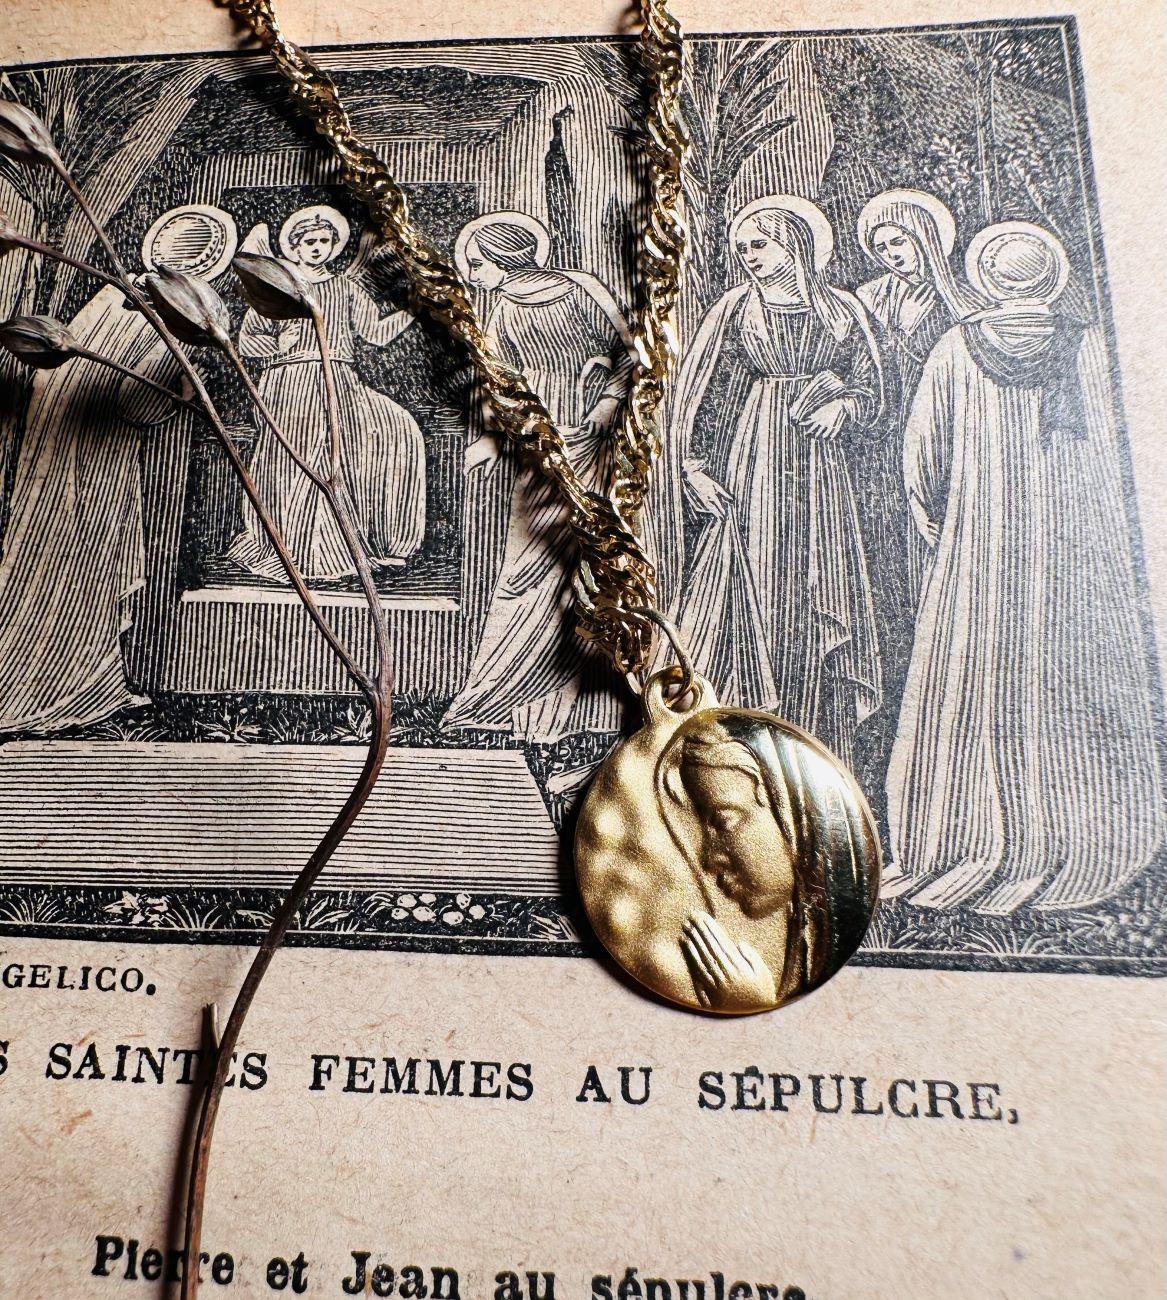 Médaille "Vierge de la prière" martelée en or jaune 18 carats - Maison Gabriel